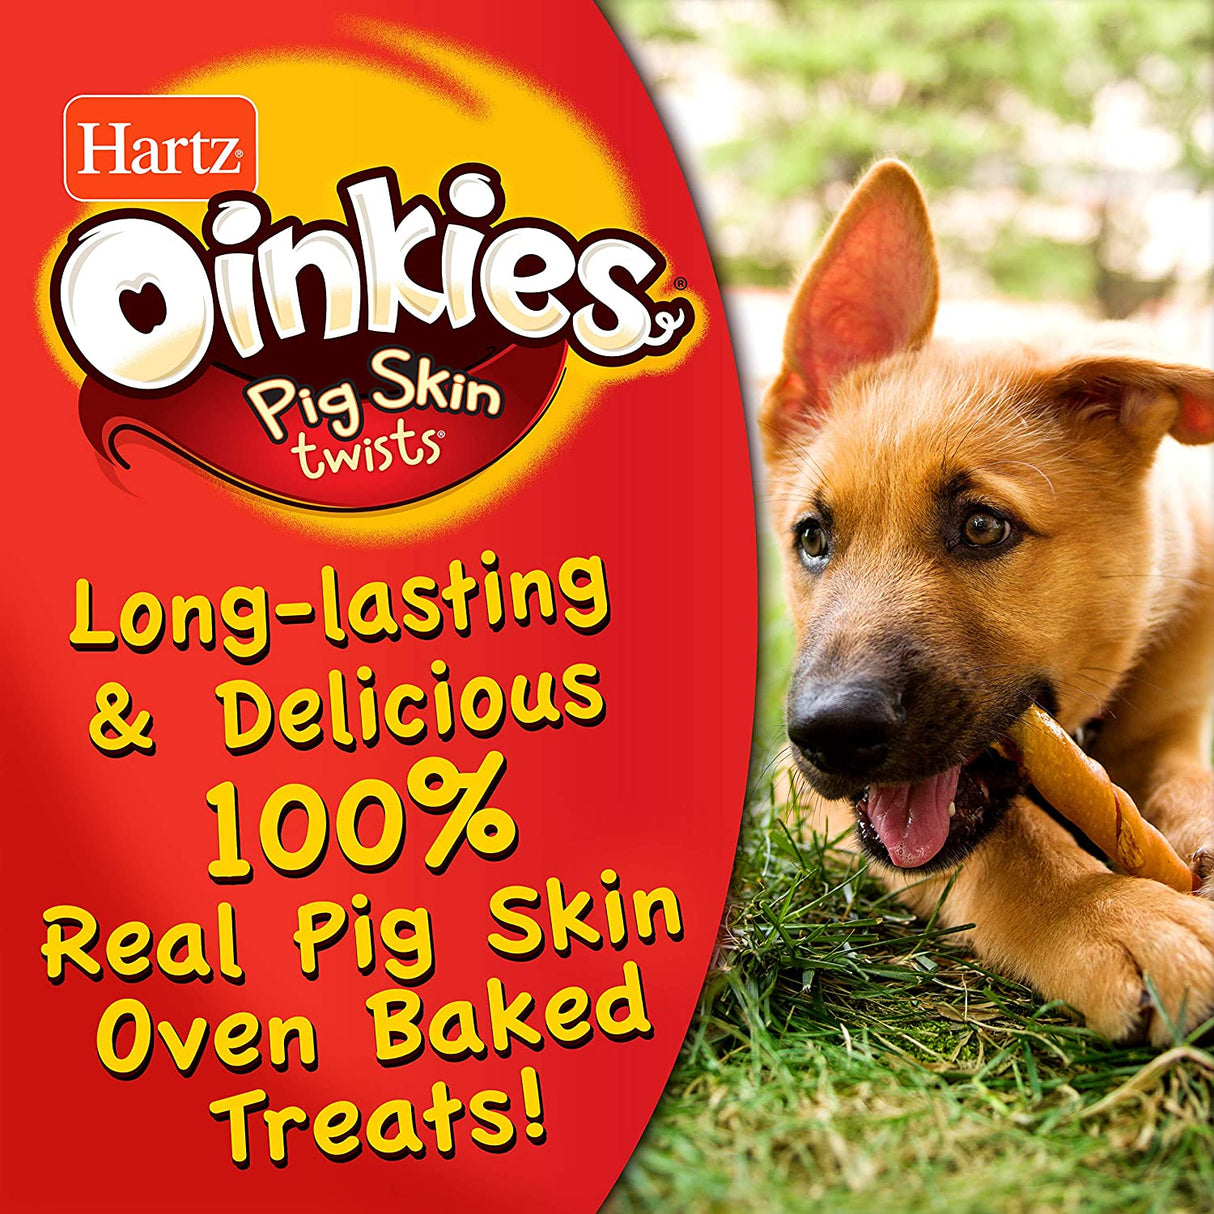 60 count (3 x 20 ct) Hartz Oinkies Pig Skin Regular Twists Smoked Flavor